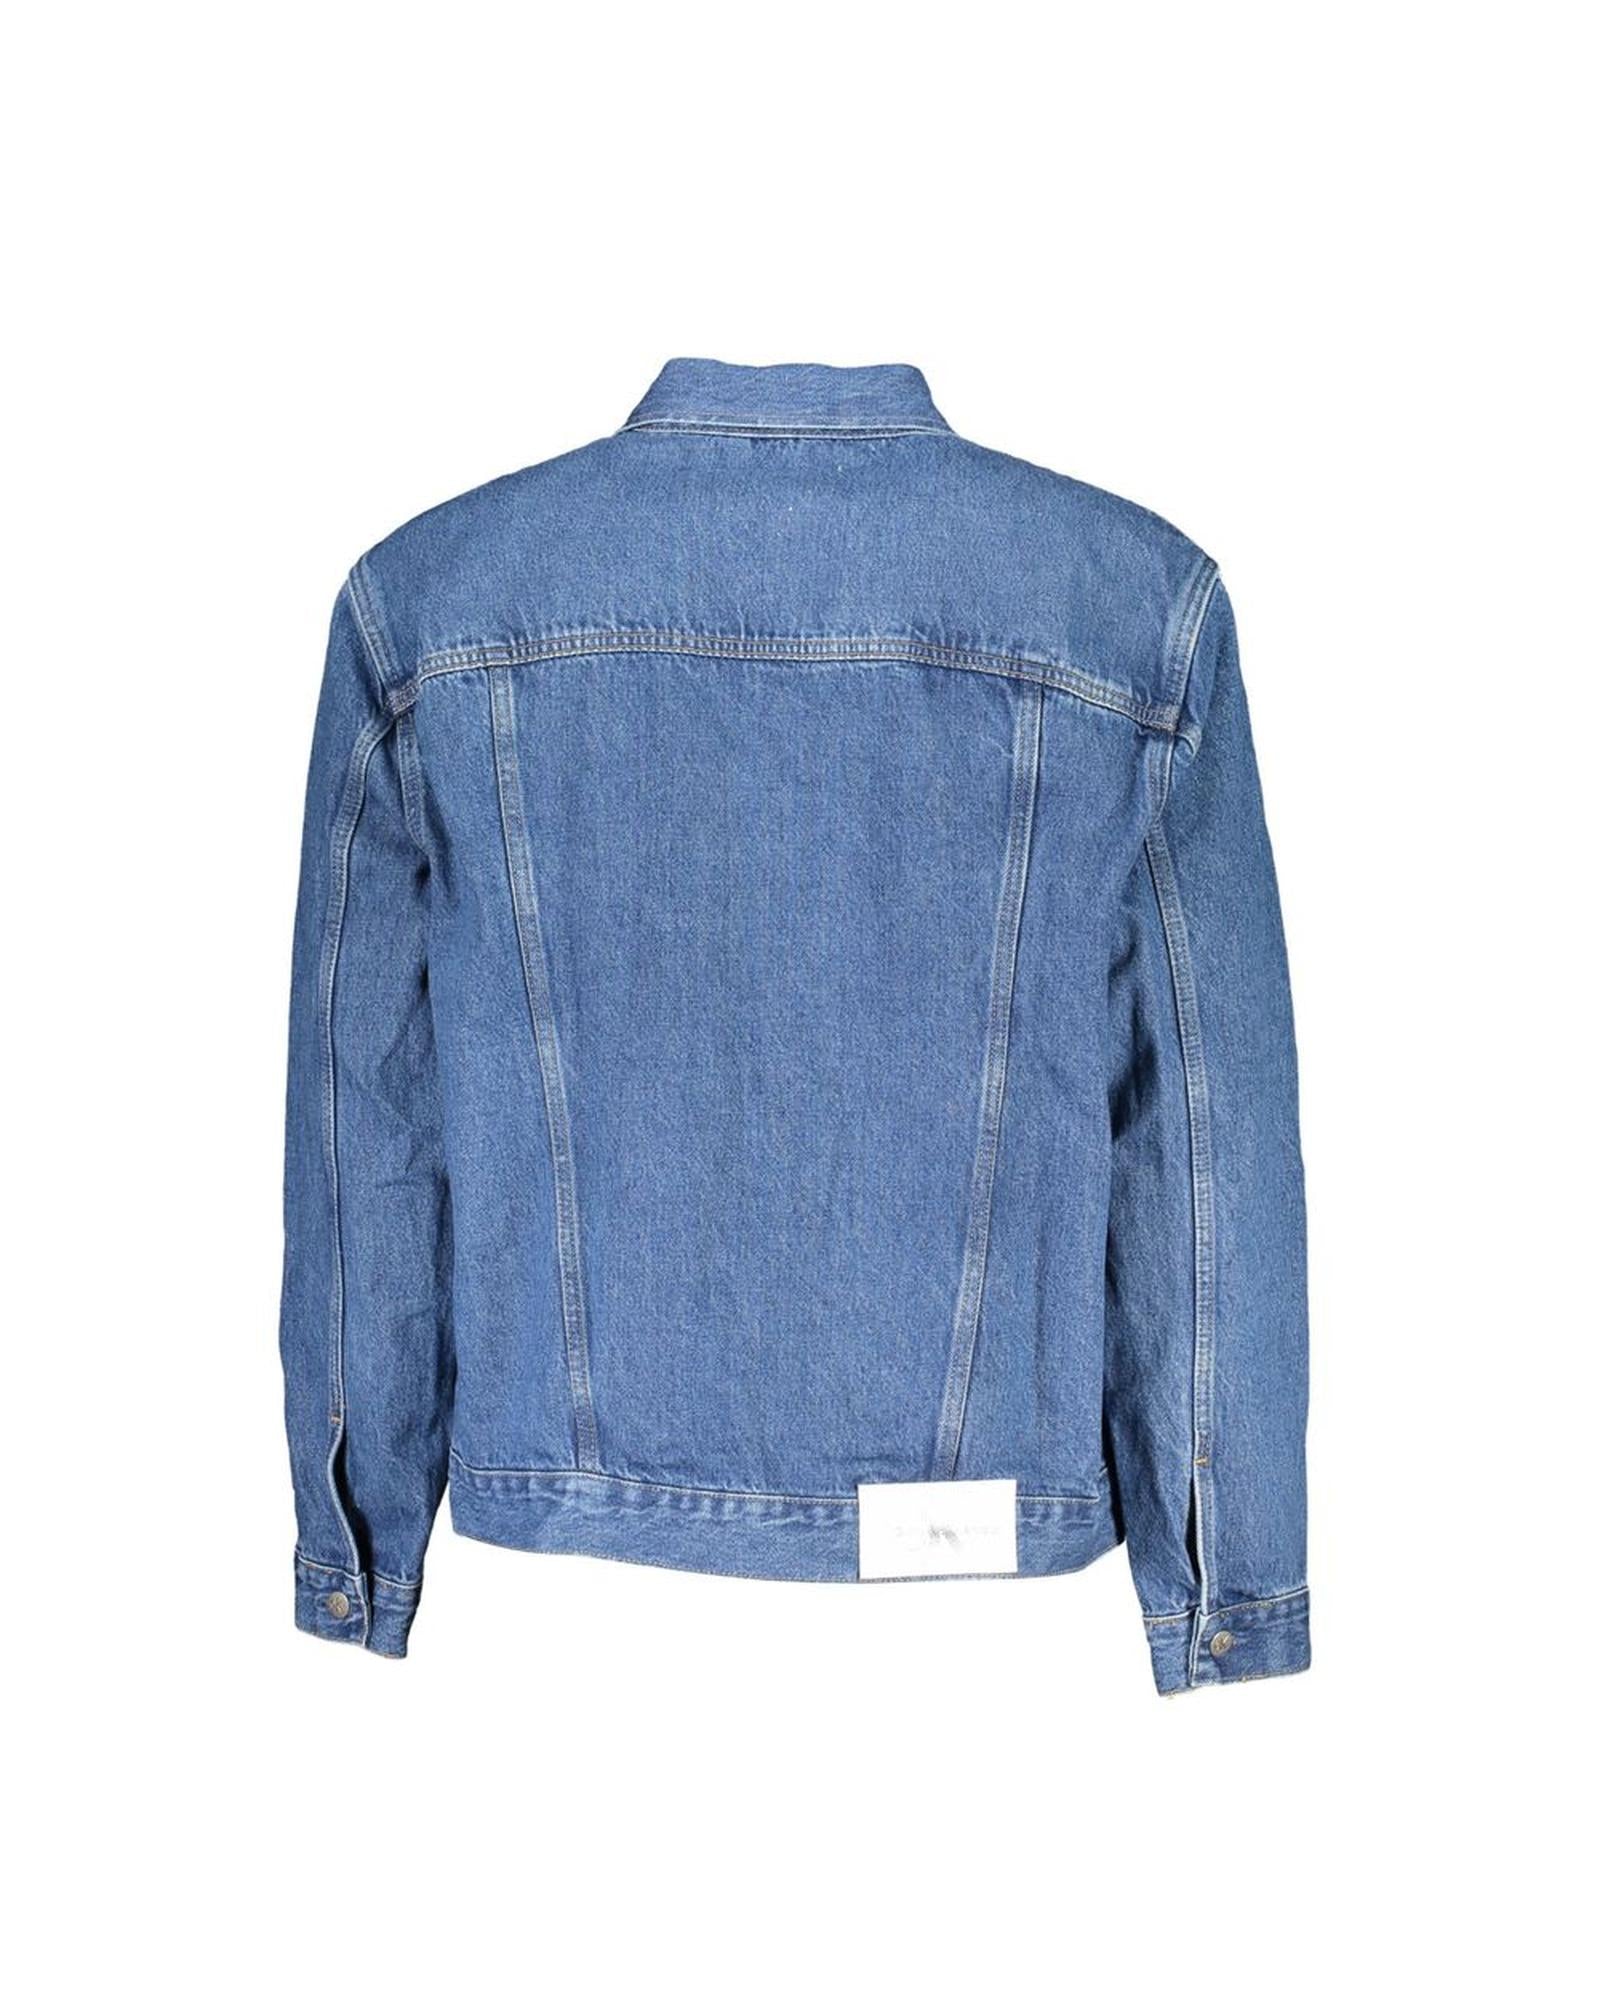 Men's Blue Cotton Jacket - 2XL